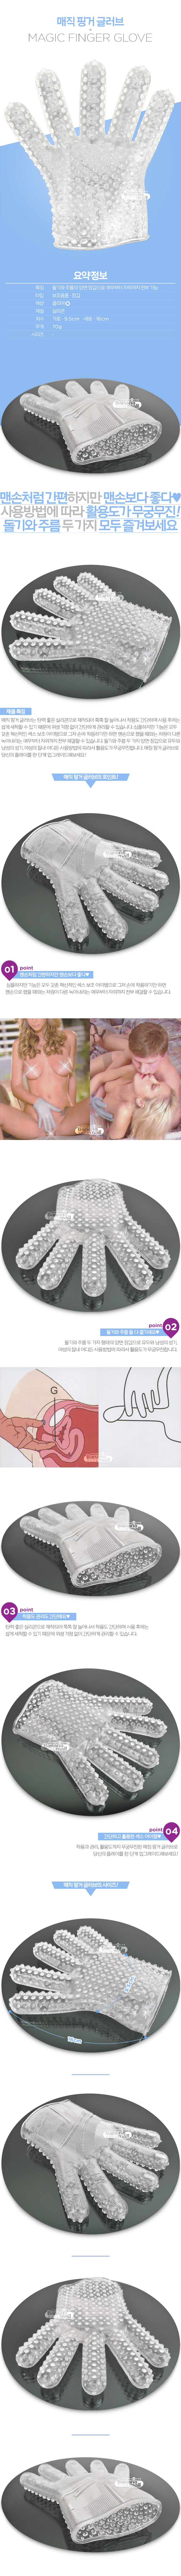 [애무용 장갑] 매직 핑거 글러브(Magic Finger Glove) - 00362 (JTN)